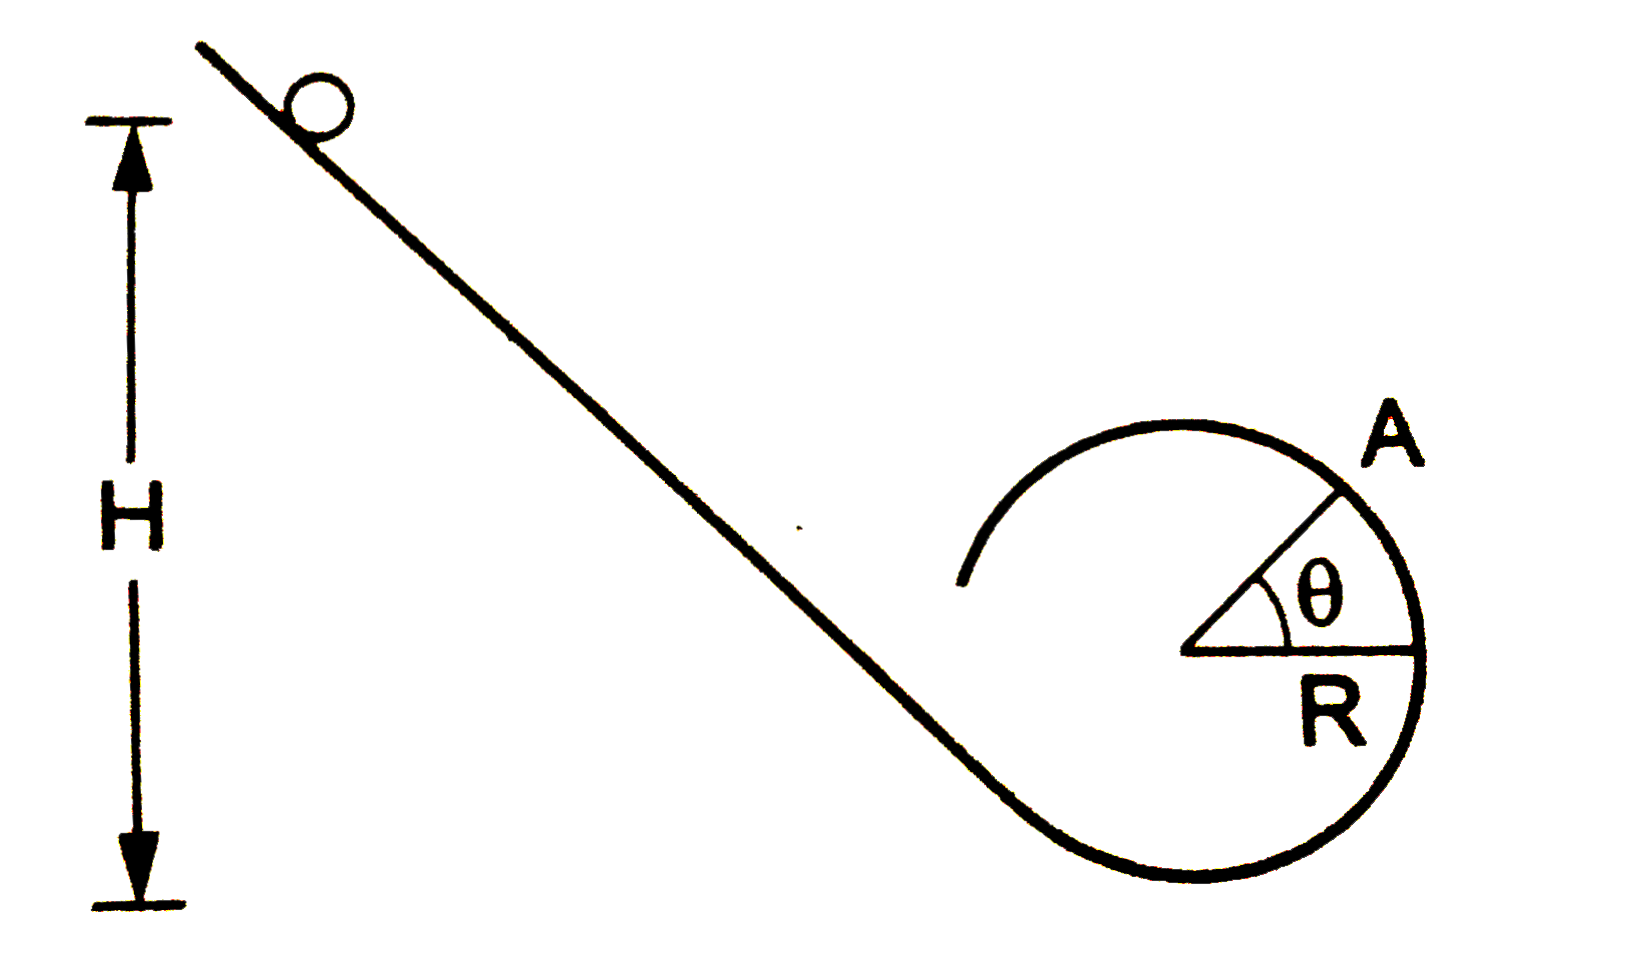 चित्र  में m द्रव्यमान का एक गोलाकार बॉल लूप आकृति के पथ पर नीचे की ओर लुढ़क रहा है। बॉल को पथ के रेखीय भाग पर पथ के निम्नतम बिंदु से H ऊँचाई से छोड़ा गया है। चित्र में दिखाए गए पथ के वृत्ताकार भाग की त्रिज्या R है।   (a) बिंदु A पर त्रिज्या क्षैतिज से theta कोण बनाती है। बॉल जब बिंदु A पर पहुँचता है तब उसकी गतिज ऊर्जा ज्ञात करे।   (b) जब बॉल A पर है, उस समय इसके त्रिज्यीय तथा स्पर्शरेखीय त्वरण ज्ञात करे।   (c) यदि H=60cm,R=10cm,theta=0^(@)